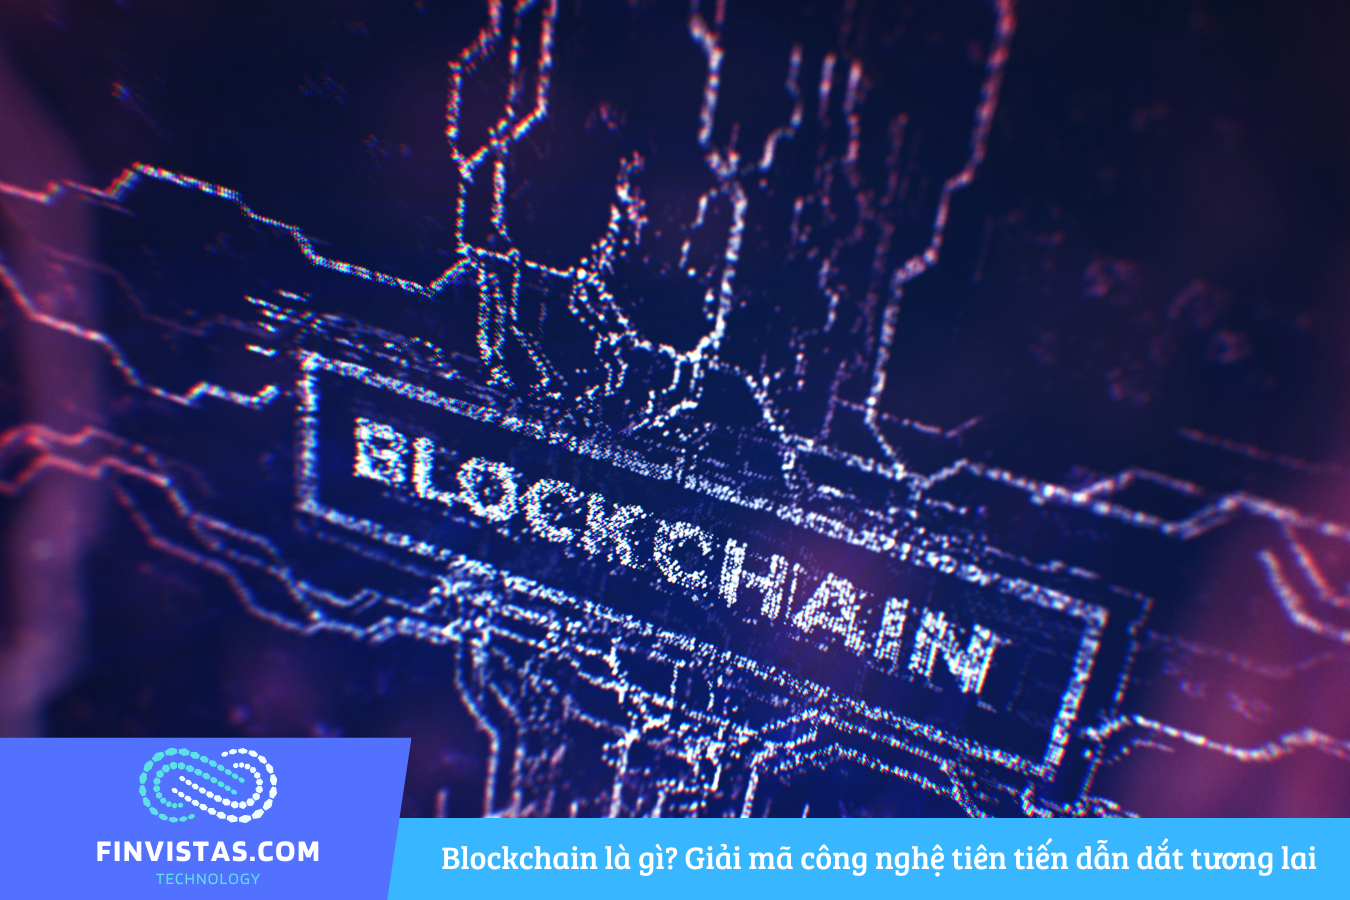 Blockchain là gì? Giải mã công nghệ tiên tiến dẫn dắt tương lai